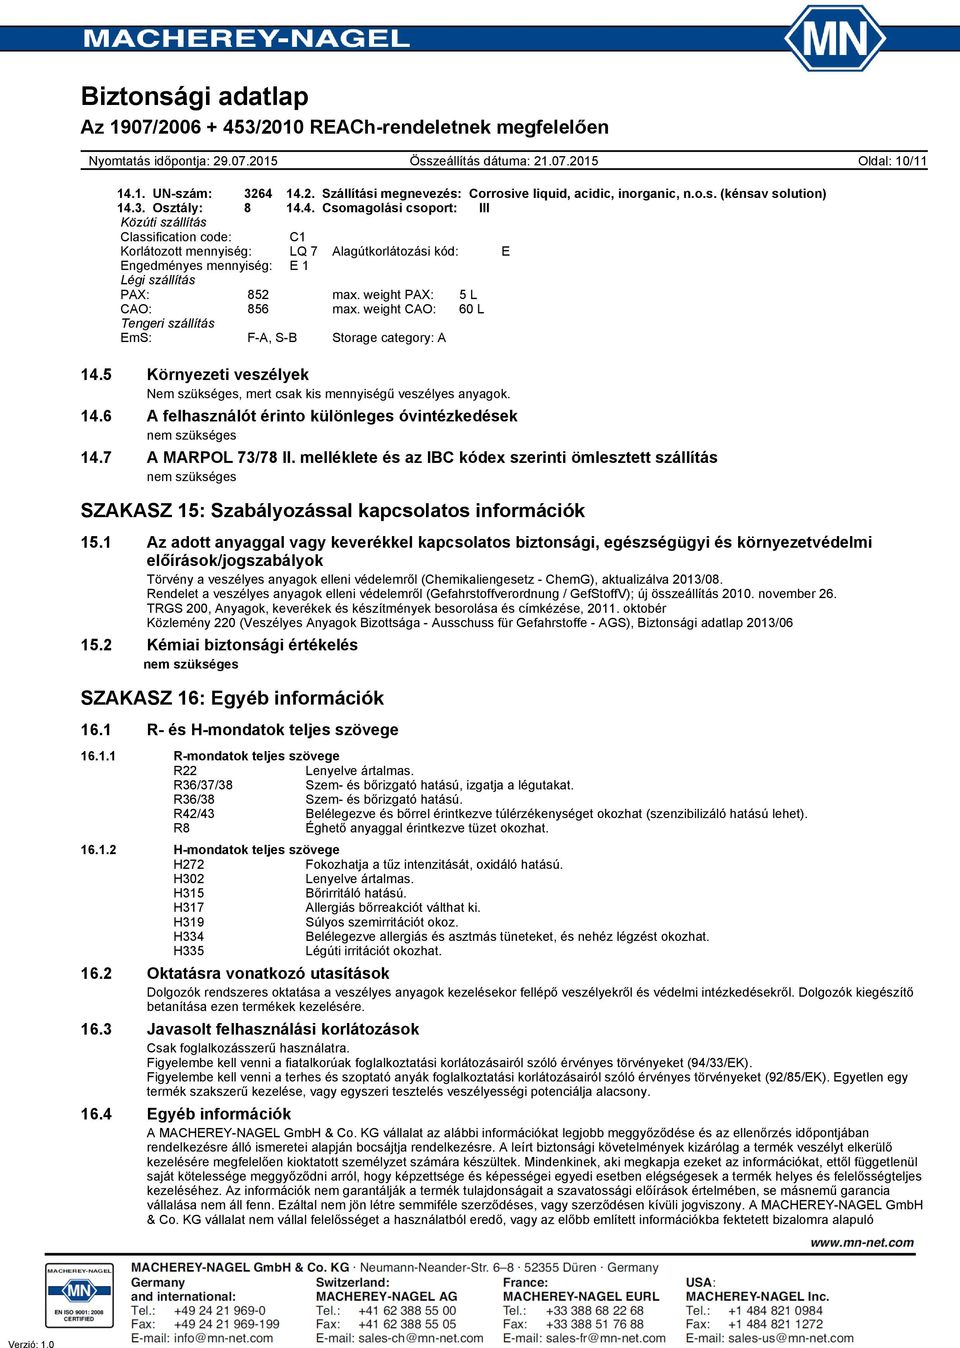 7 A MARPOL 73/78 II. melléklete és az IBC kódex szerinti ömlesztett szállítás nem szükséges SZAKASZ 15: Szabályozással kapcsolatos információk 15.